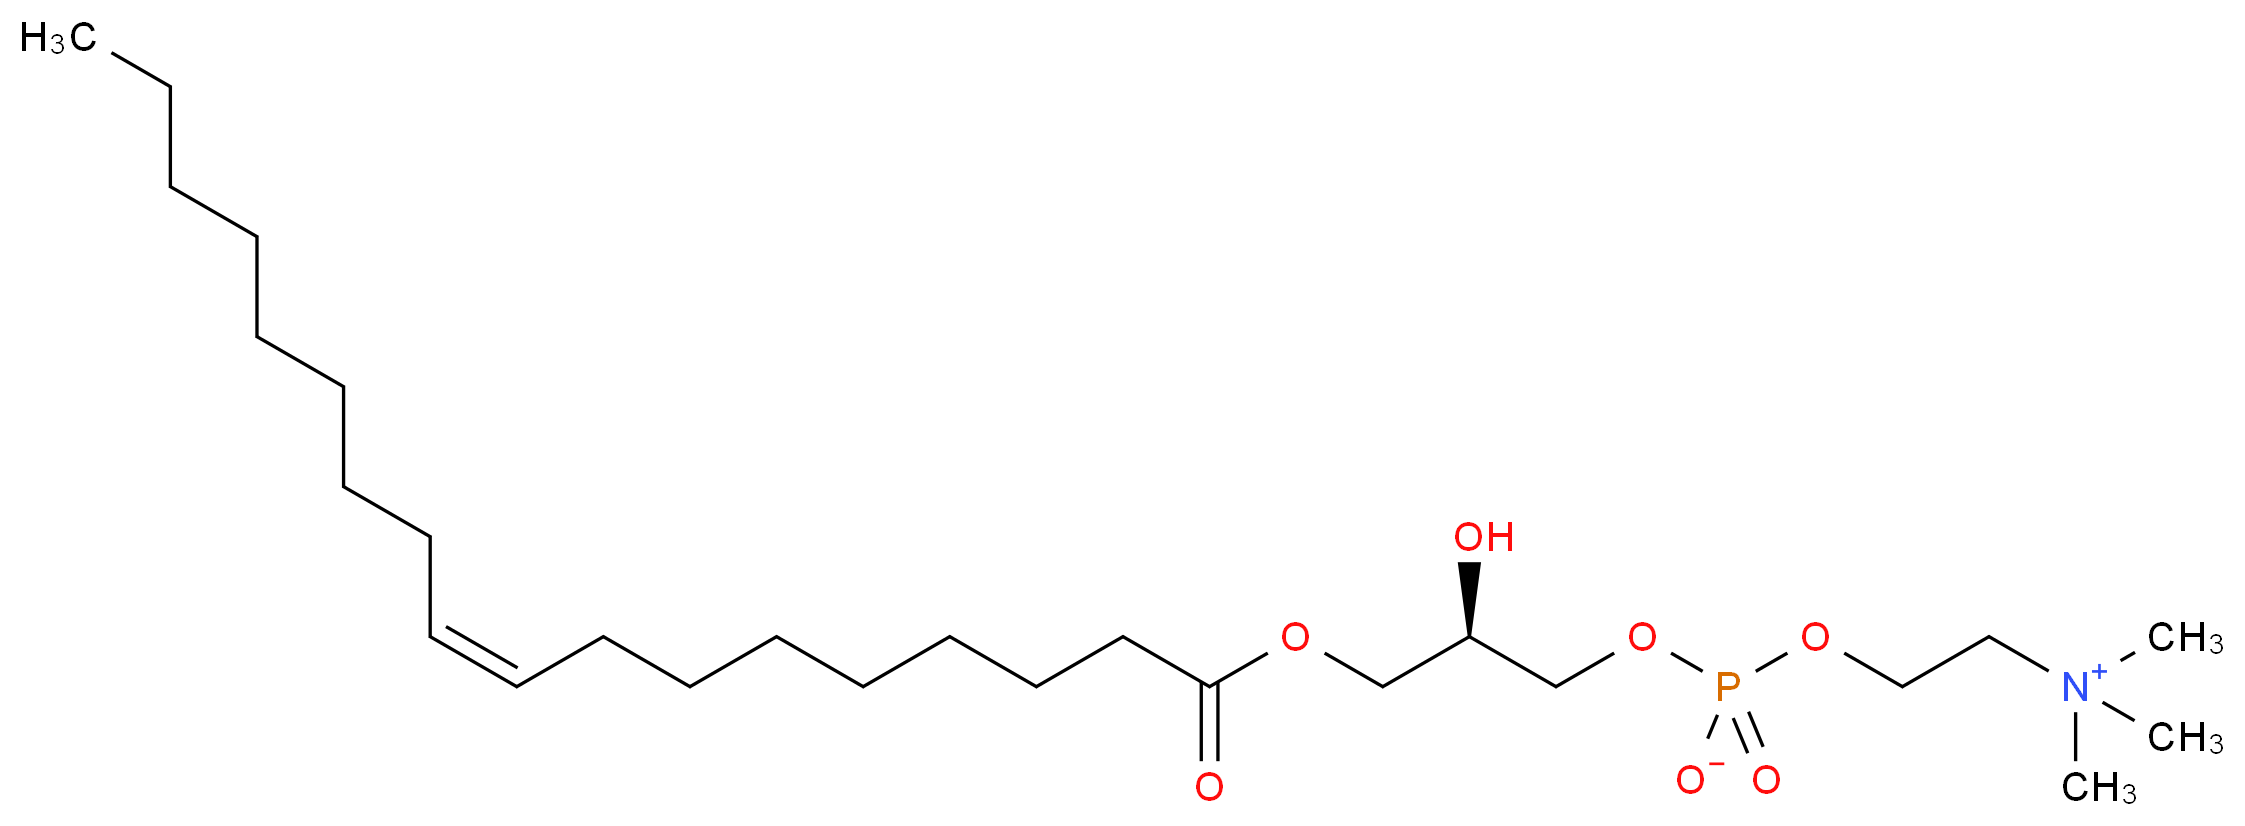 19420-56-5 molecular structure